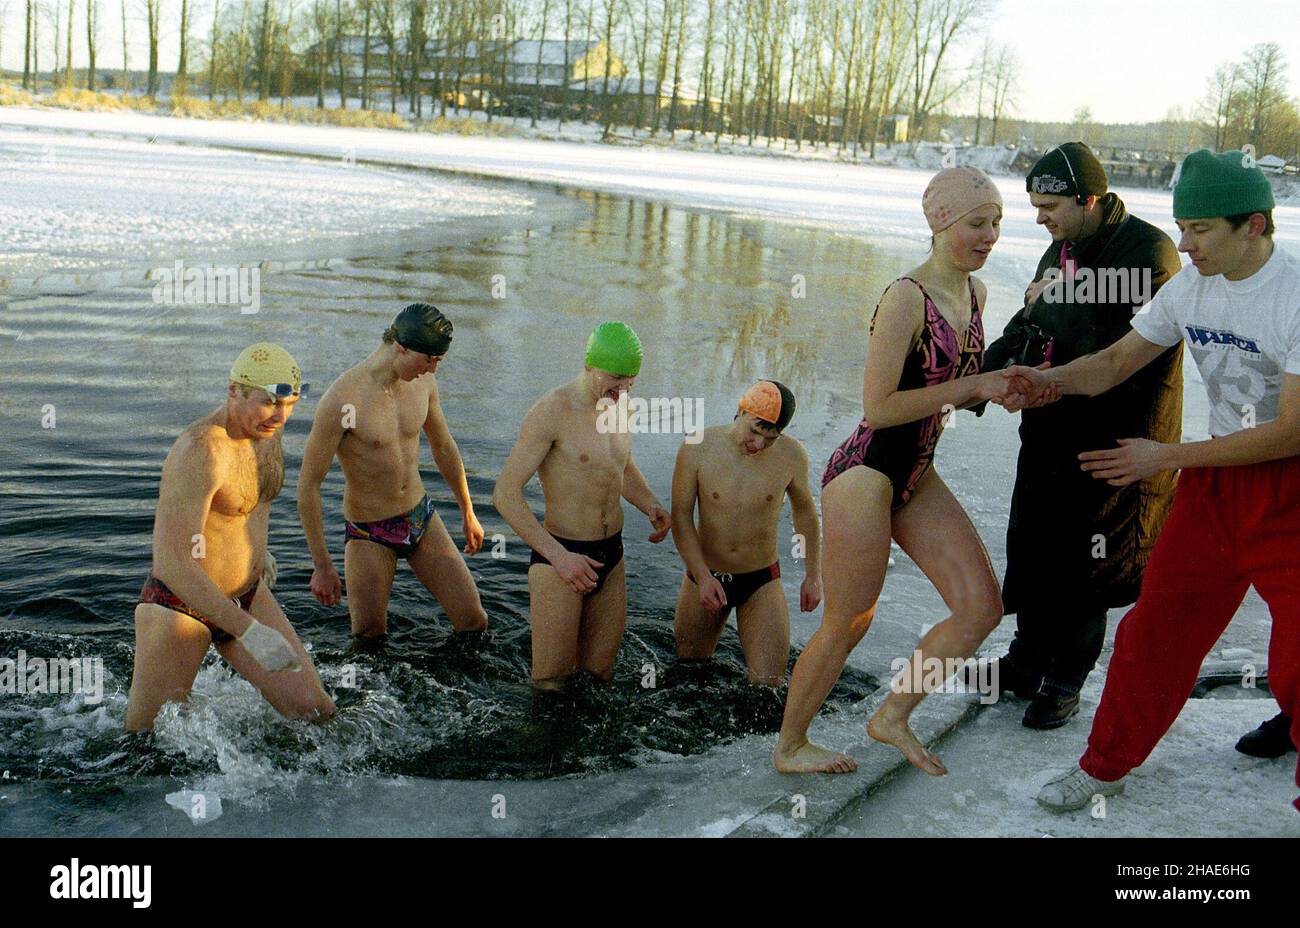 Supraœl, 31.12.1995. K¹piel bia³ostockich morsów w rzece Supraœl. (mr) PAP/Zdzis³aw Lenkiewicz     Suprasl, 31.12.1995. Walruses, a group of cold water swimmers from Bialystok during their annual winter swim in Suprasl river. (mr) PAP/Zdzis³aw Lenkiewicz Stock Photo